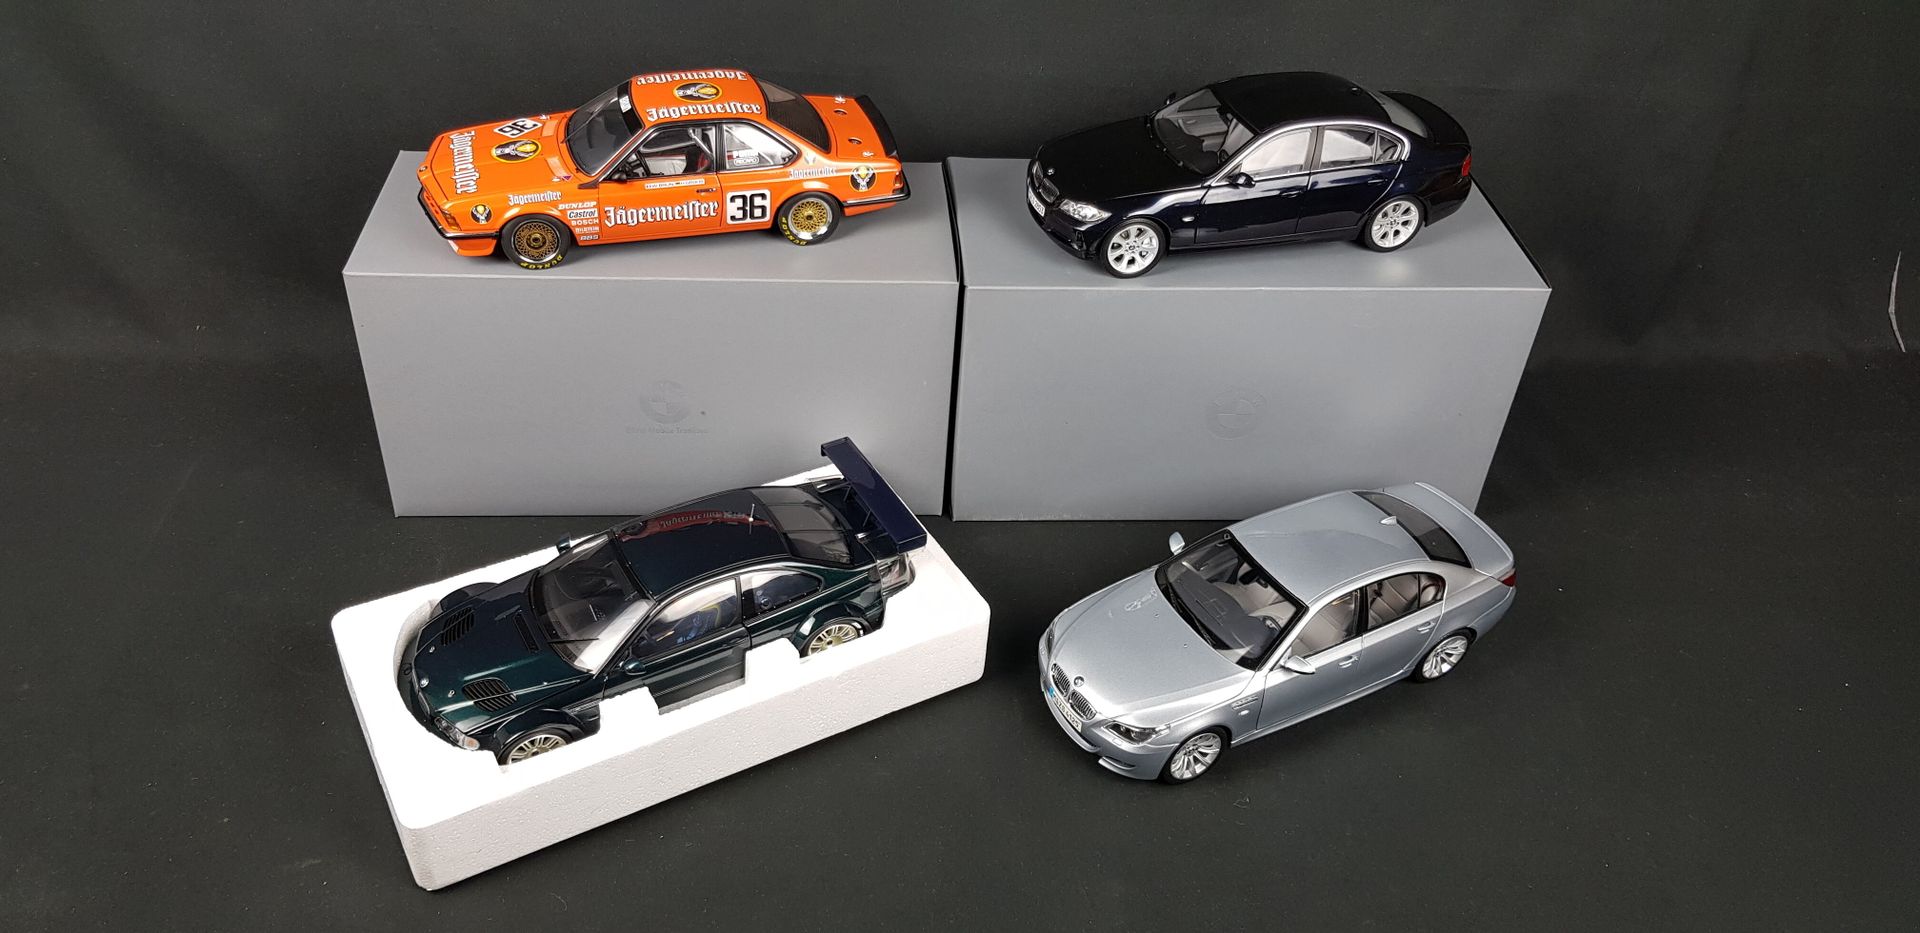 Null BMW - CUATRO BMW en escala 1/18:

1x M5

1x M3 GTR

1x 635Csi

1x Serie 3

&hellip;